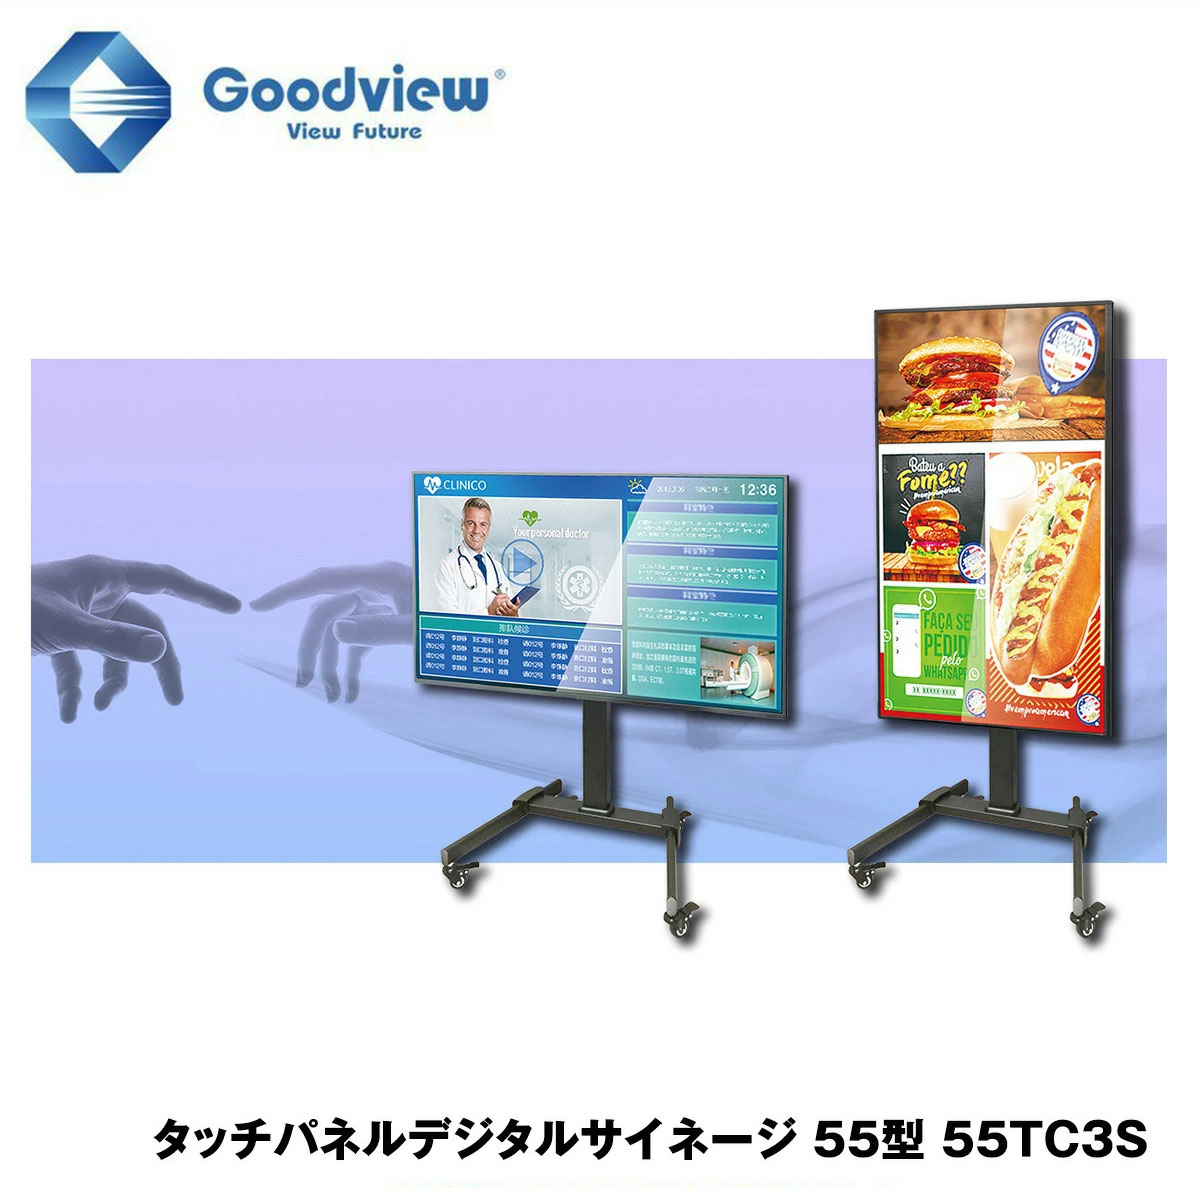 Goodview デジタルサイネージ タッチパネルサイネージ スタンドセット 450カンデラ 55型【55TC3S】